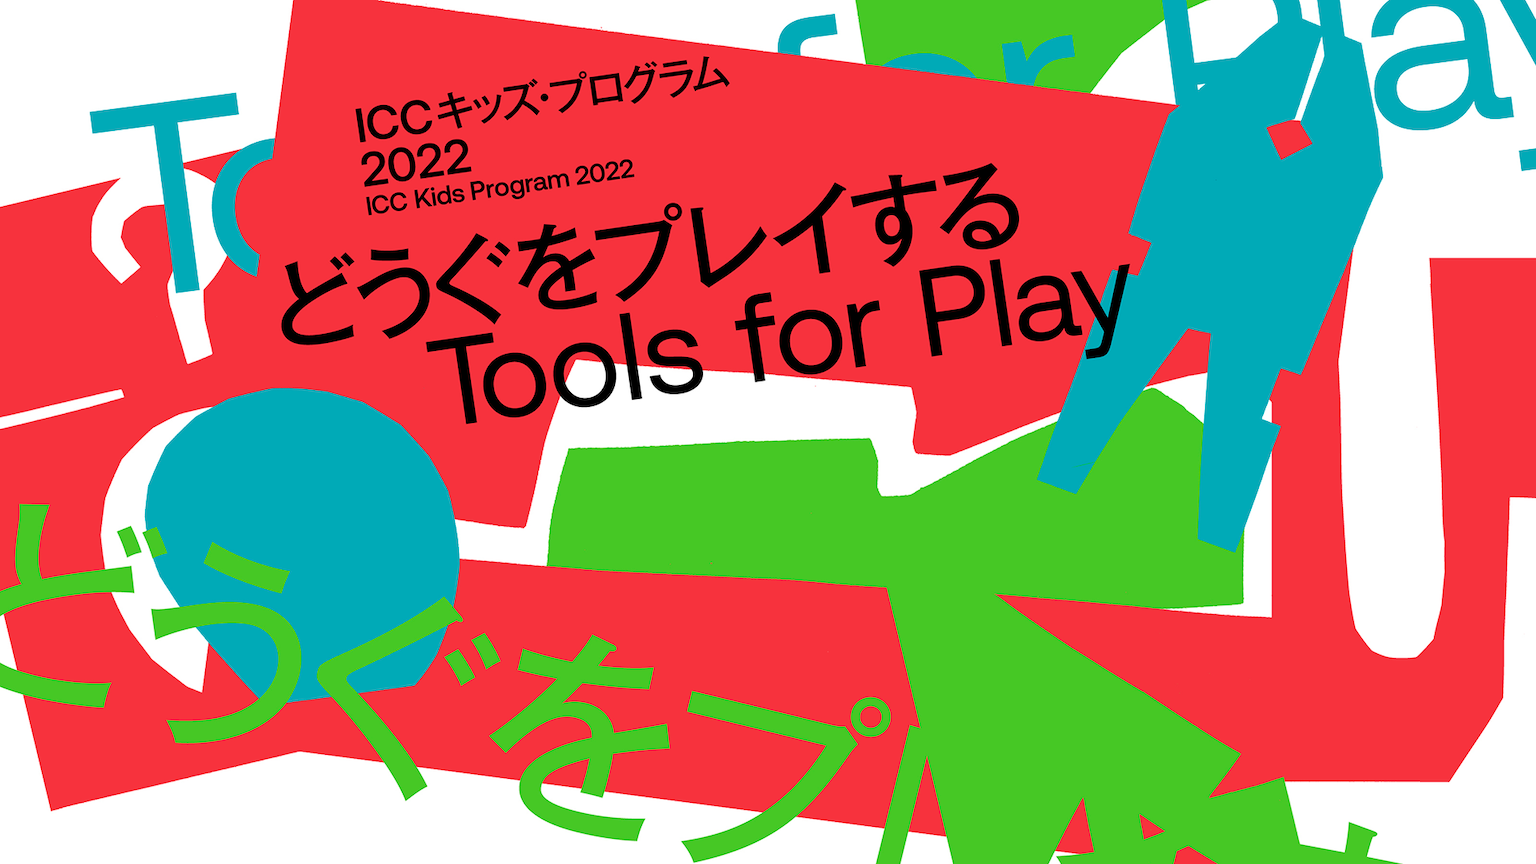 ICC キッズ・プログラム 2022 どうぐをプレイする Tools for Play